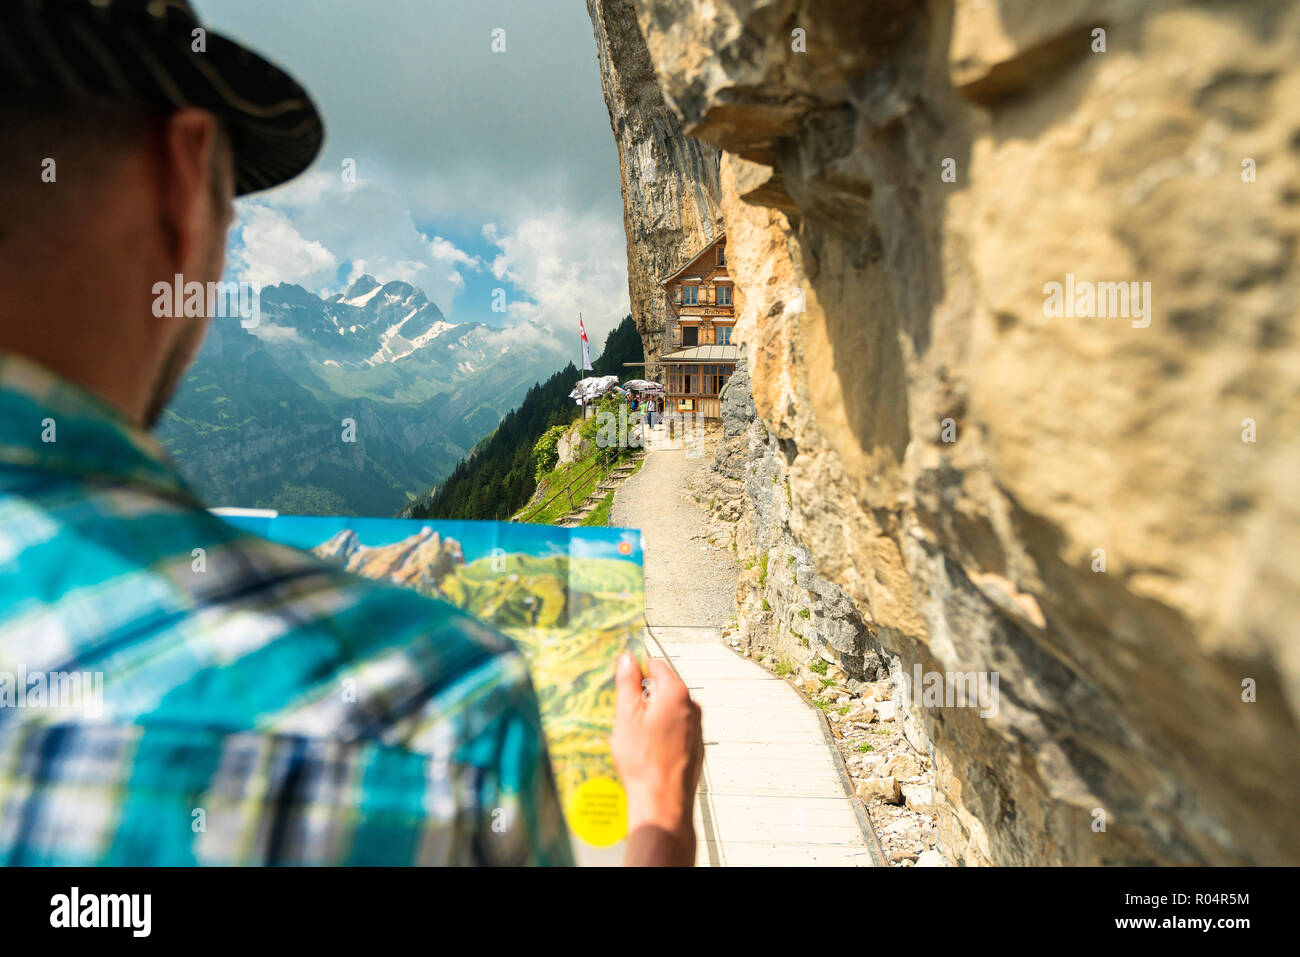 L'uomo guarda la mappa dei sentieri escursionistici, Aescher-Wildkirchli Gasthaus, Ebenalp, Appenzell Innerrhoden, Svizzera, Europa Foto Stock